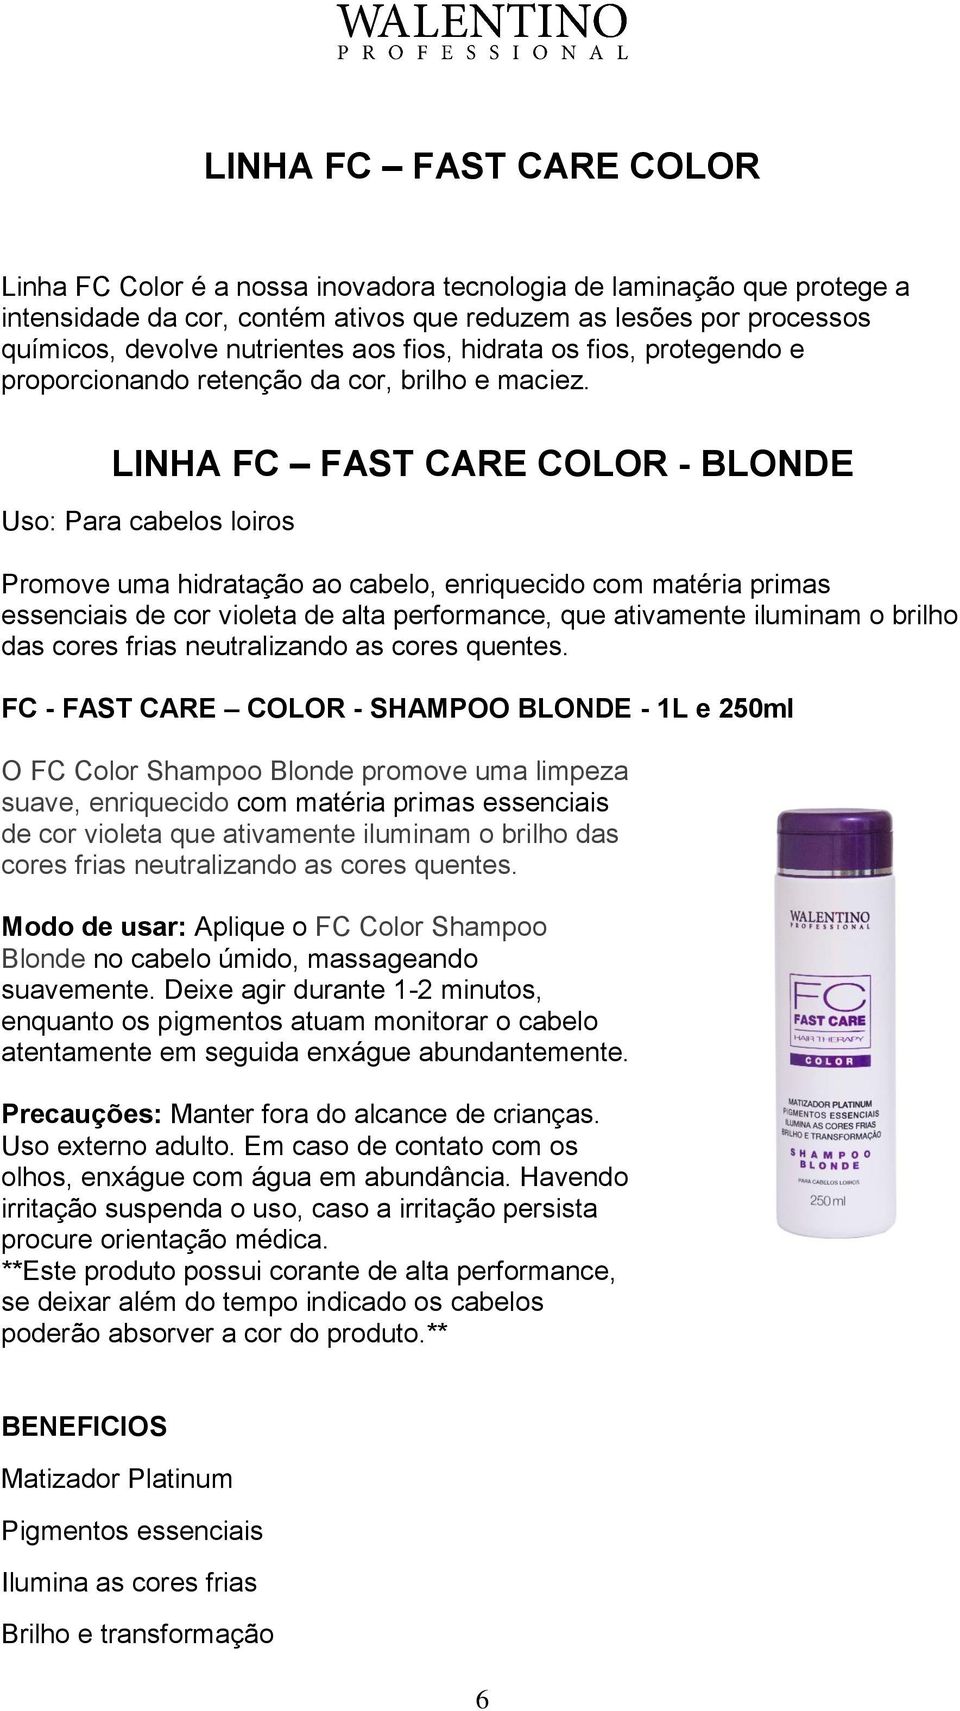 LINHA FC FAST CARE COLOR - BLONDE Uso: Para cabelos loiros Promove uma hidratação ao cabelo, enriquecido com matéria primas essenciais de cor violeta de alta performance, que ativamente iluminam o